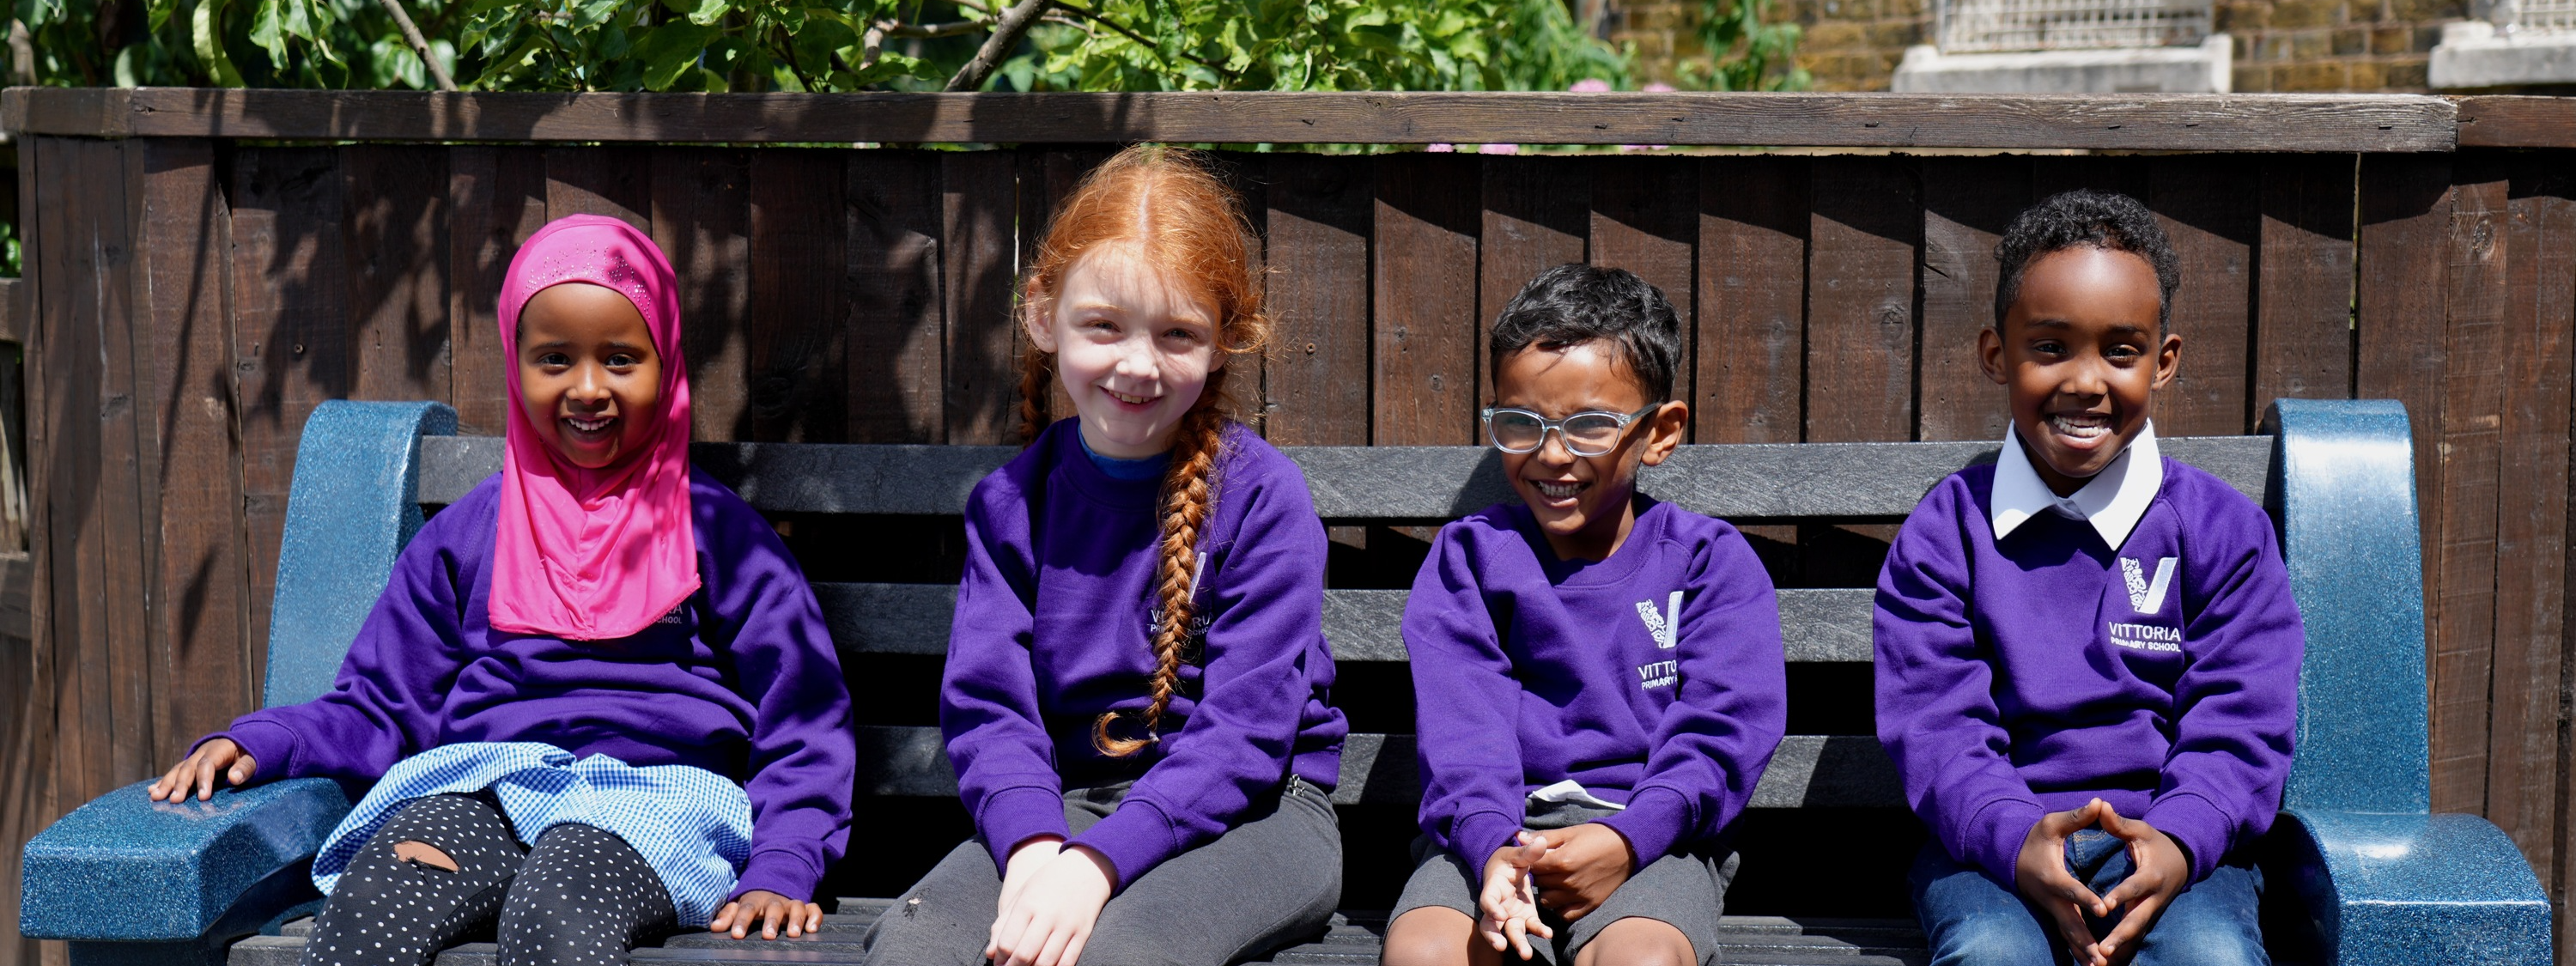 Vittoria Primary School  - Four children sitting on a bench in school uniform